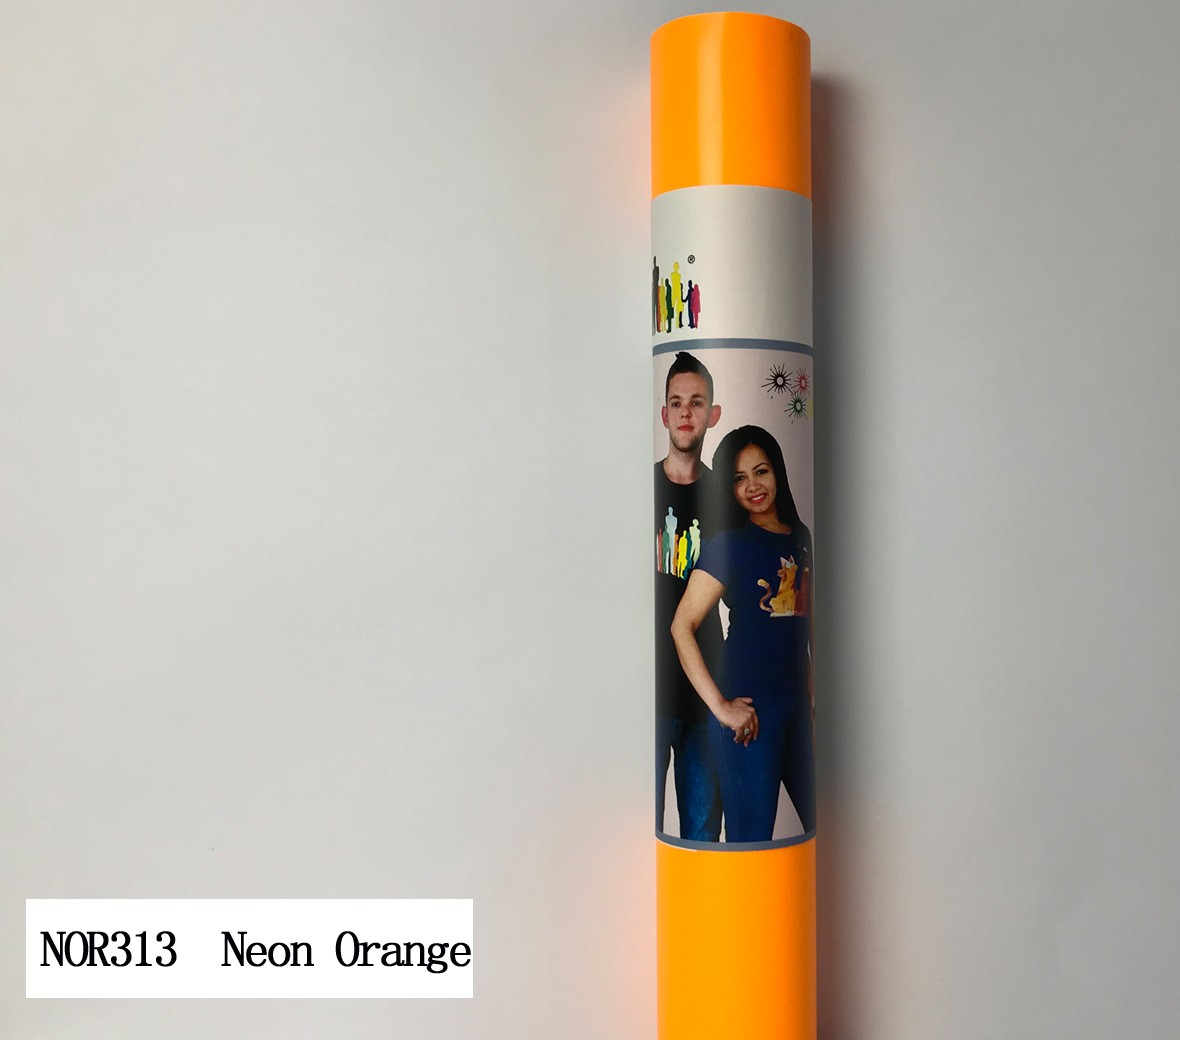 NOR313 Neon orains